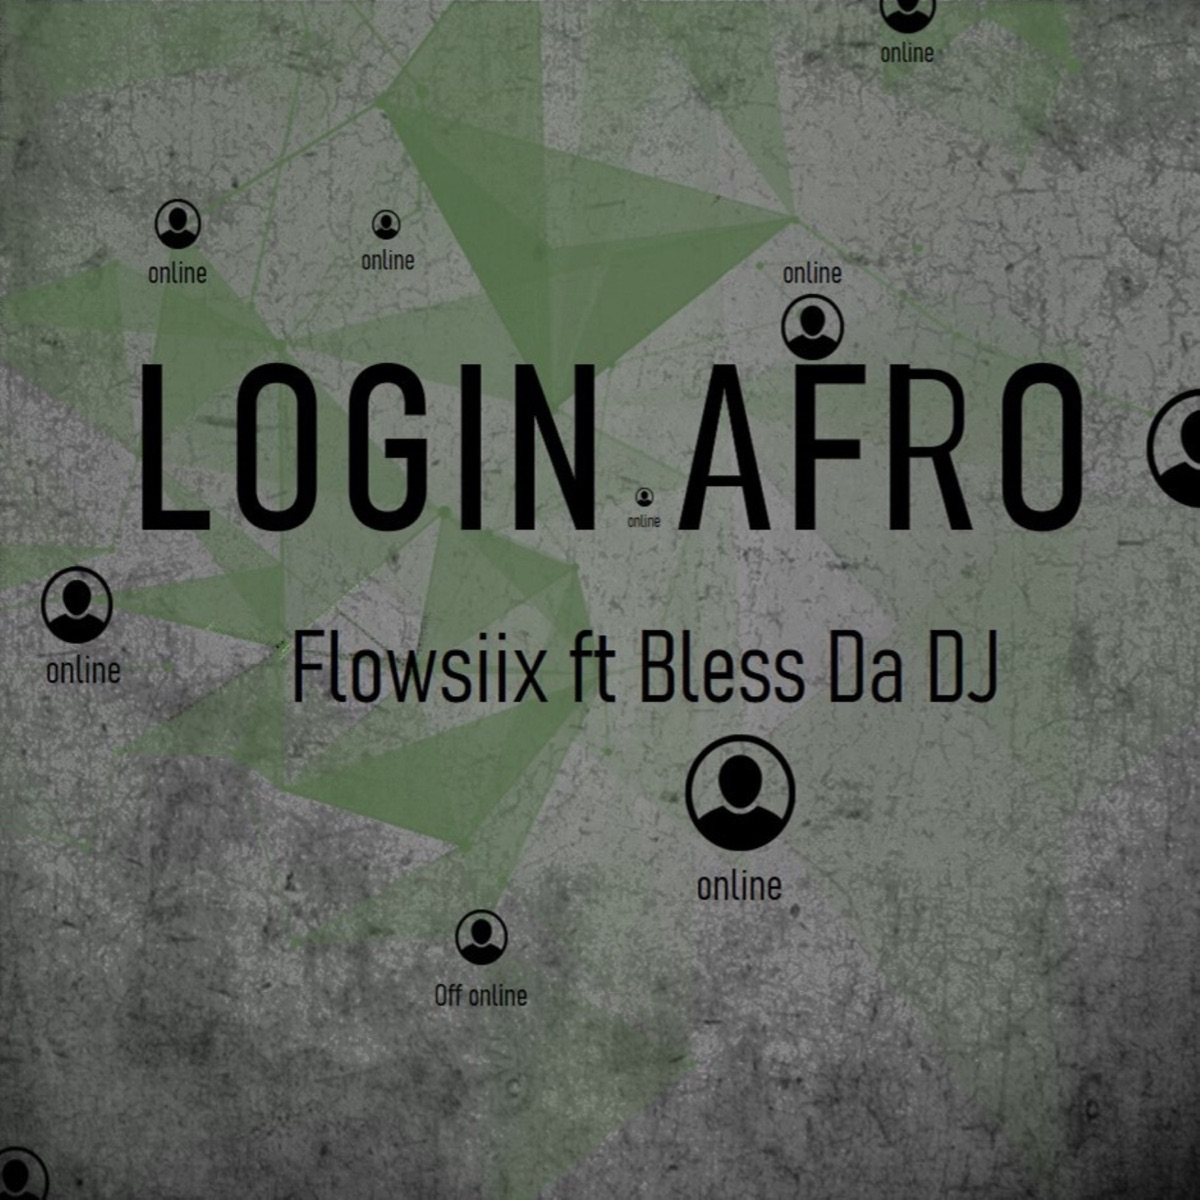 Login Afro (feat. Bless Da DJ) - Single - Album by Flowsiix - Apple Music